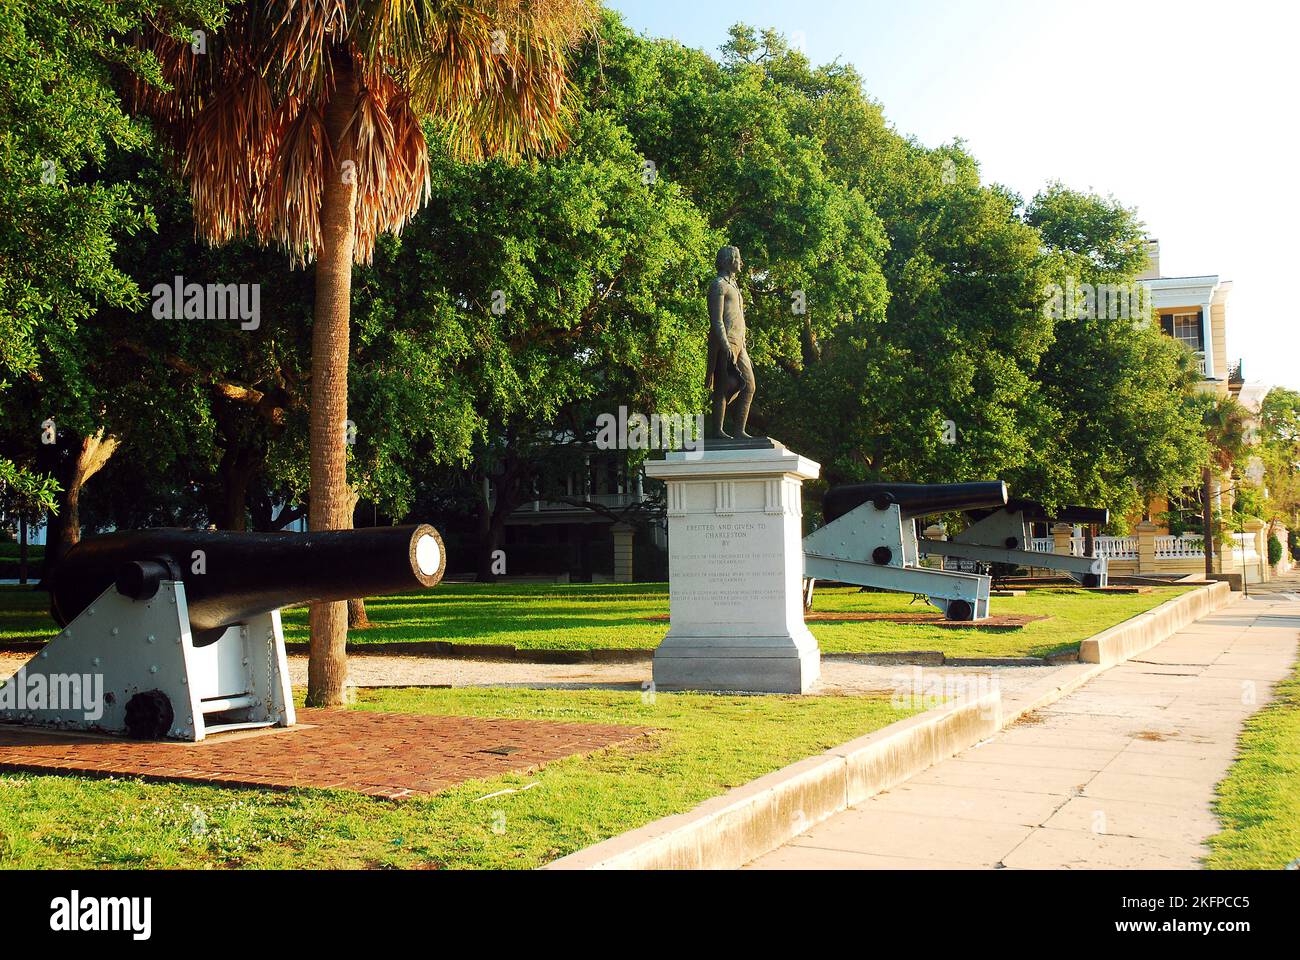 White point Gardens, à Charleston, en Caroline du Sud, expose des canons et des mémoriaux à la Confédération de la guerre civile américaine Banque D'Images